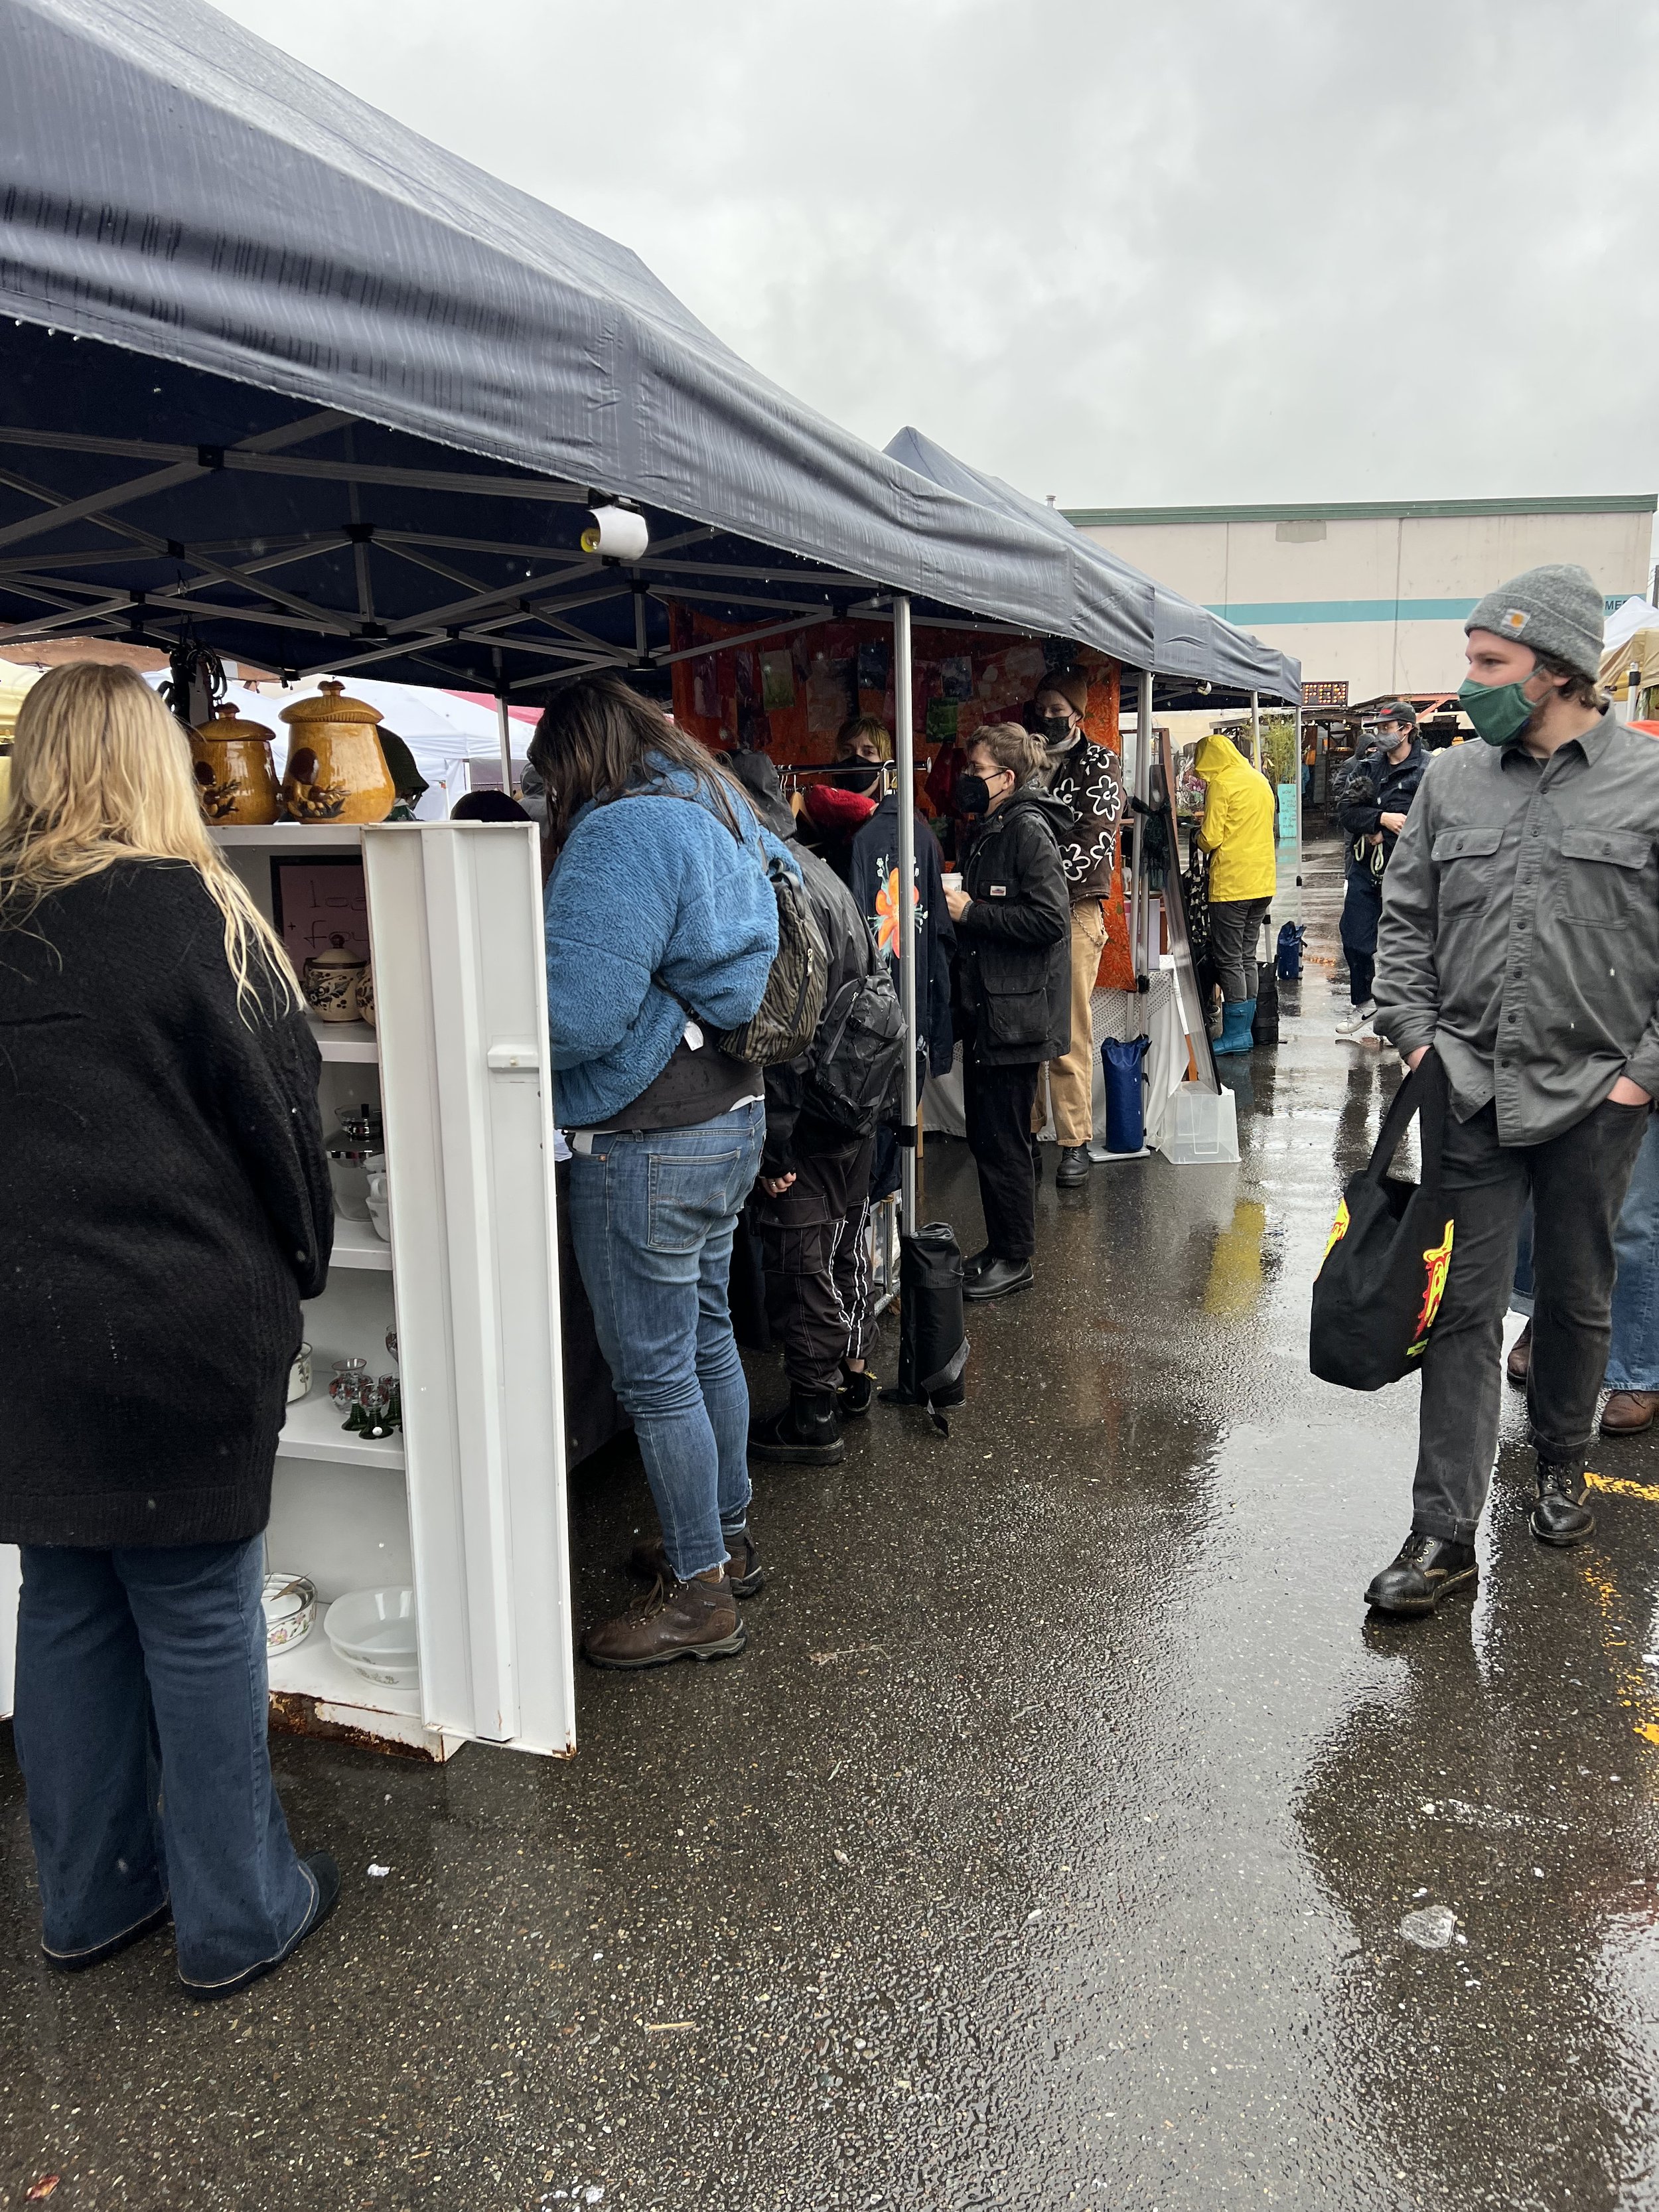 Seattle's Flea Market — Flea